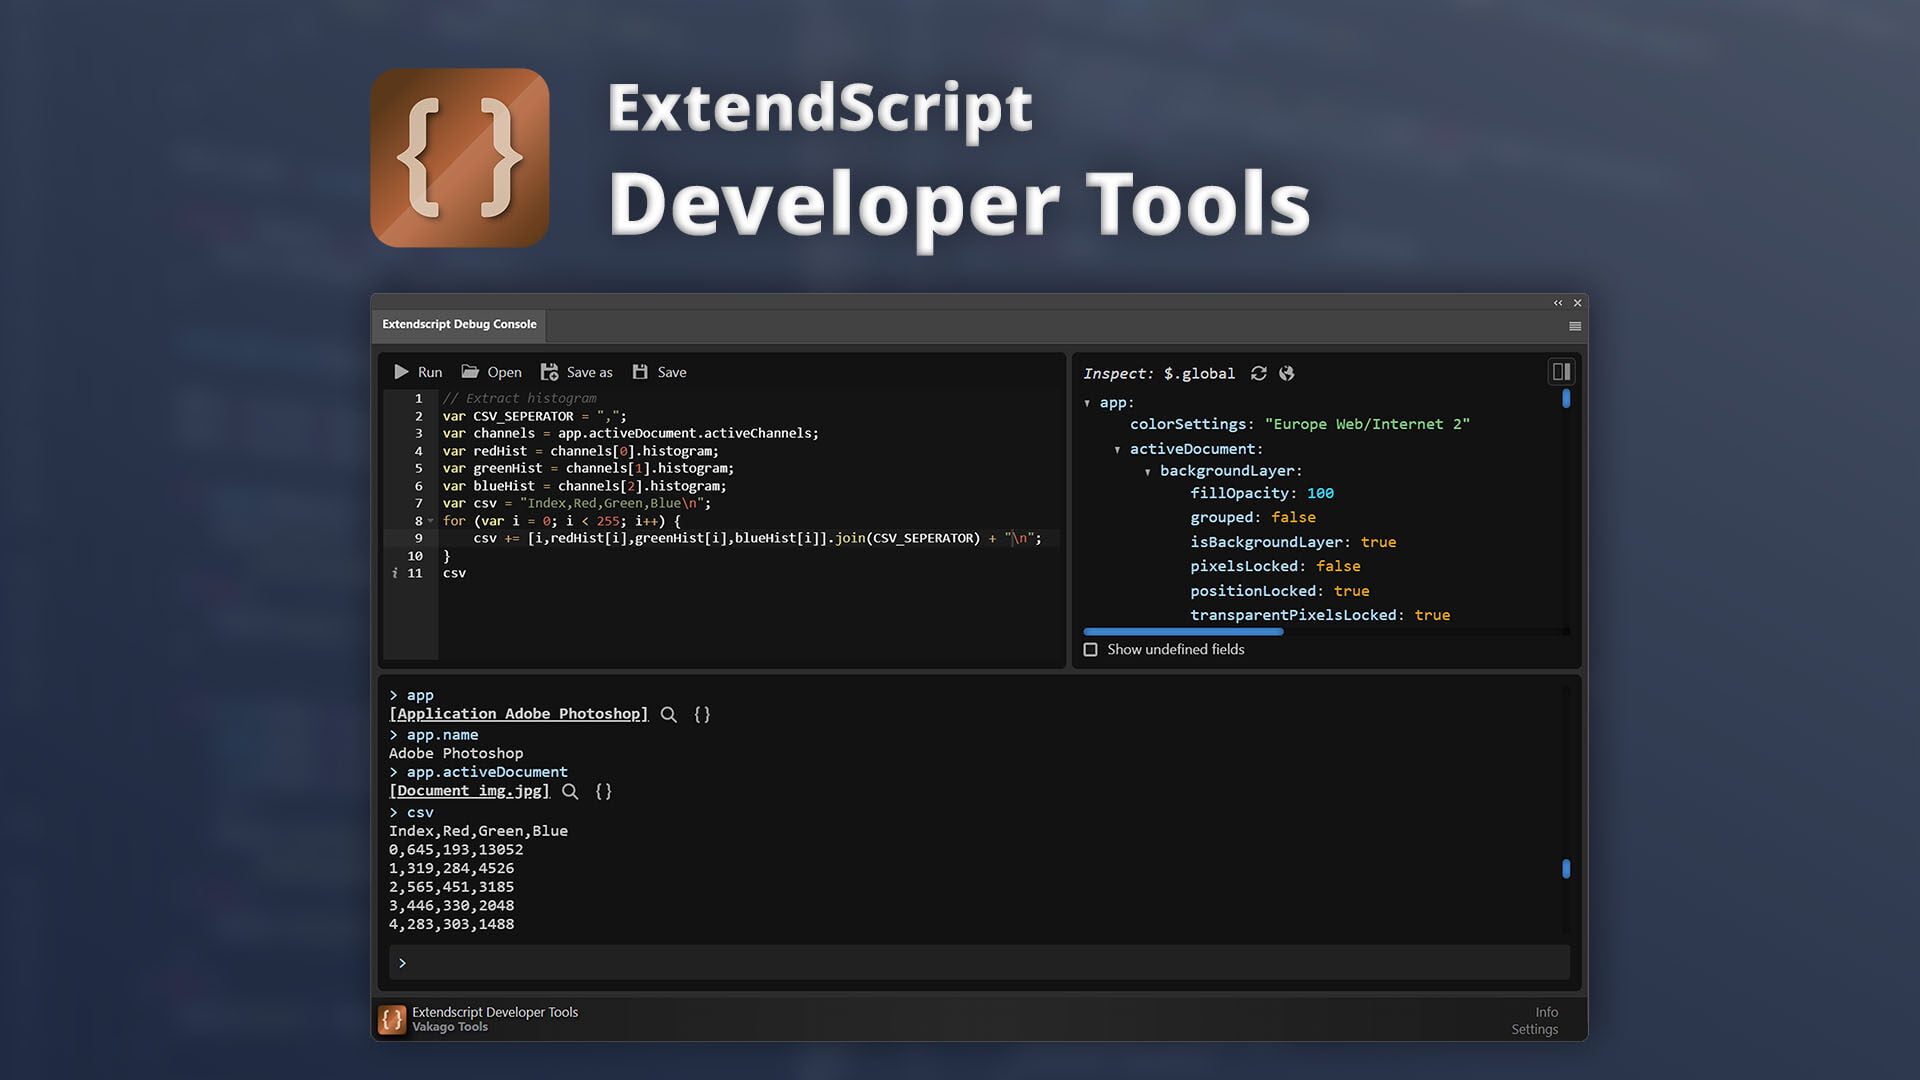 ExtendScript Developer Tools